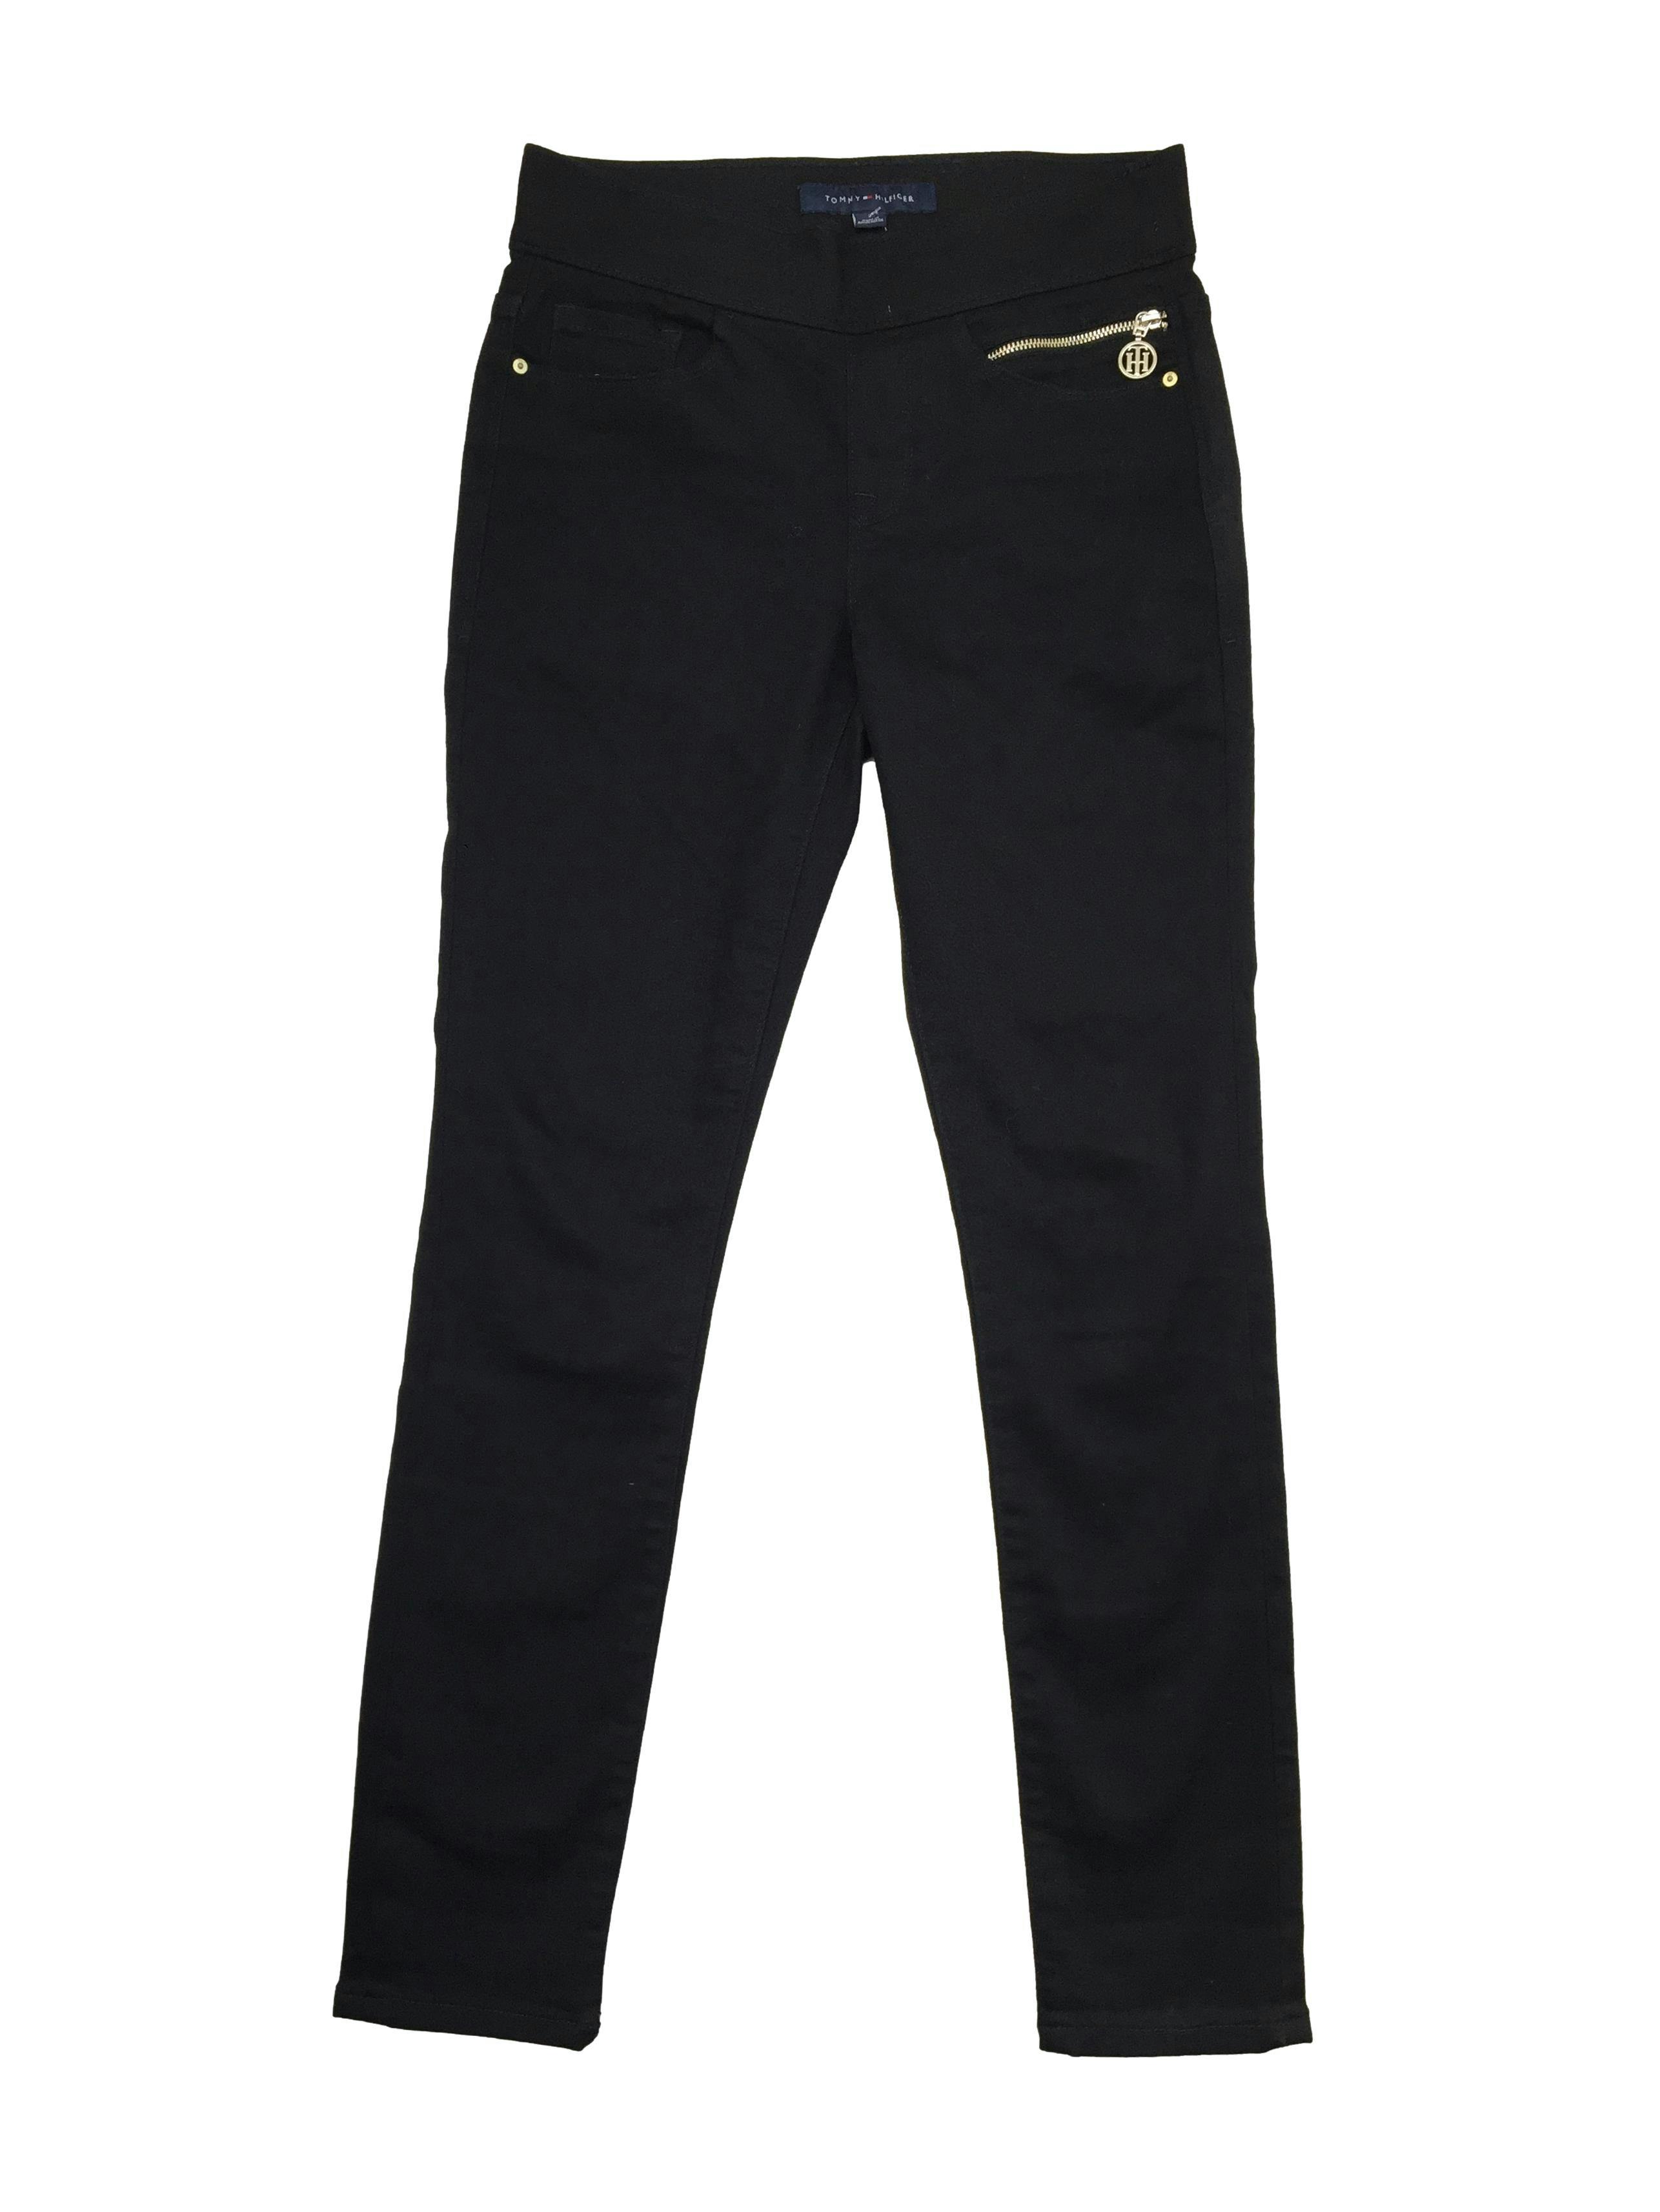 Skinny jean Tommy Hilfiger negro con 4 bolsillos y uno delantero con cierre. Cintura 70cm, Tiro 24 cm, Largo 95cm